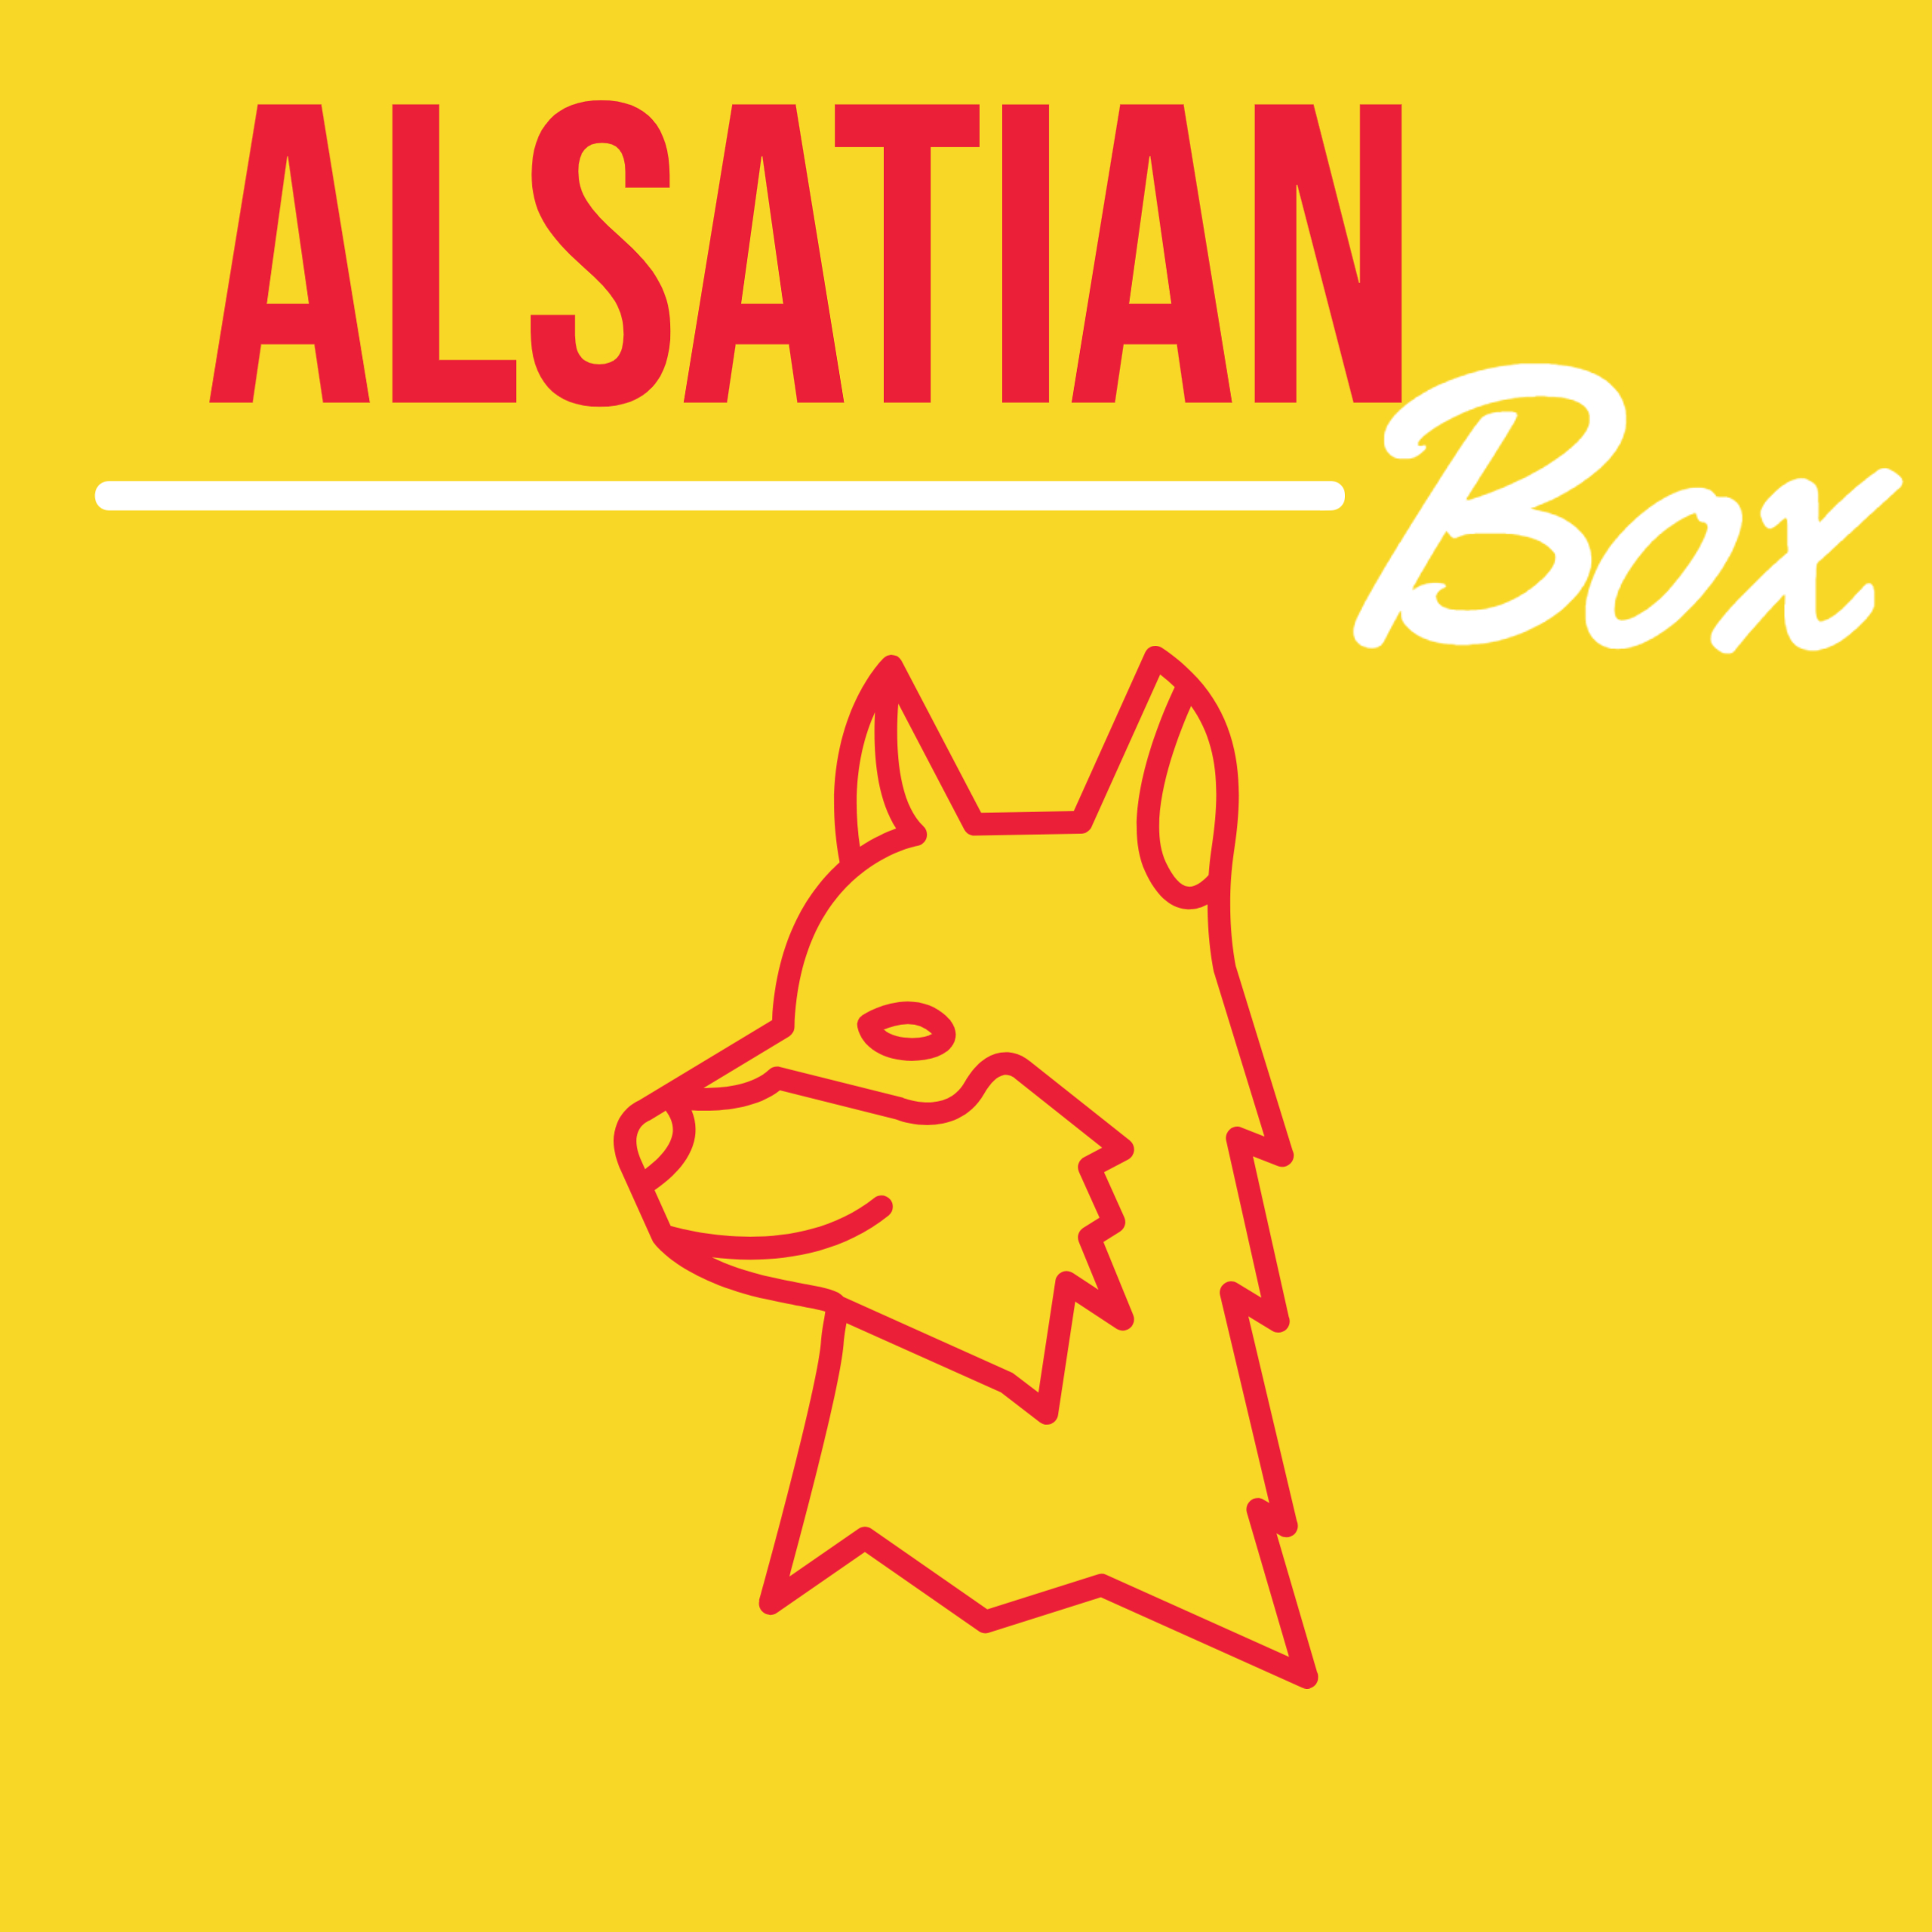 Alsace Box